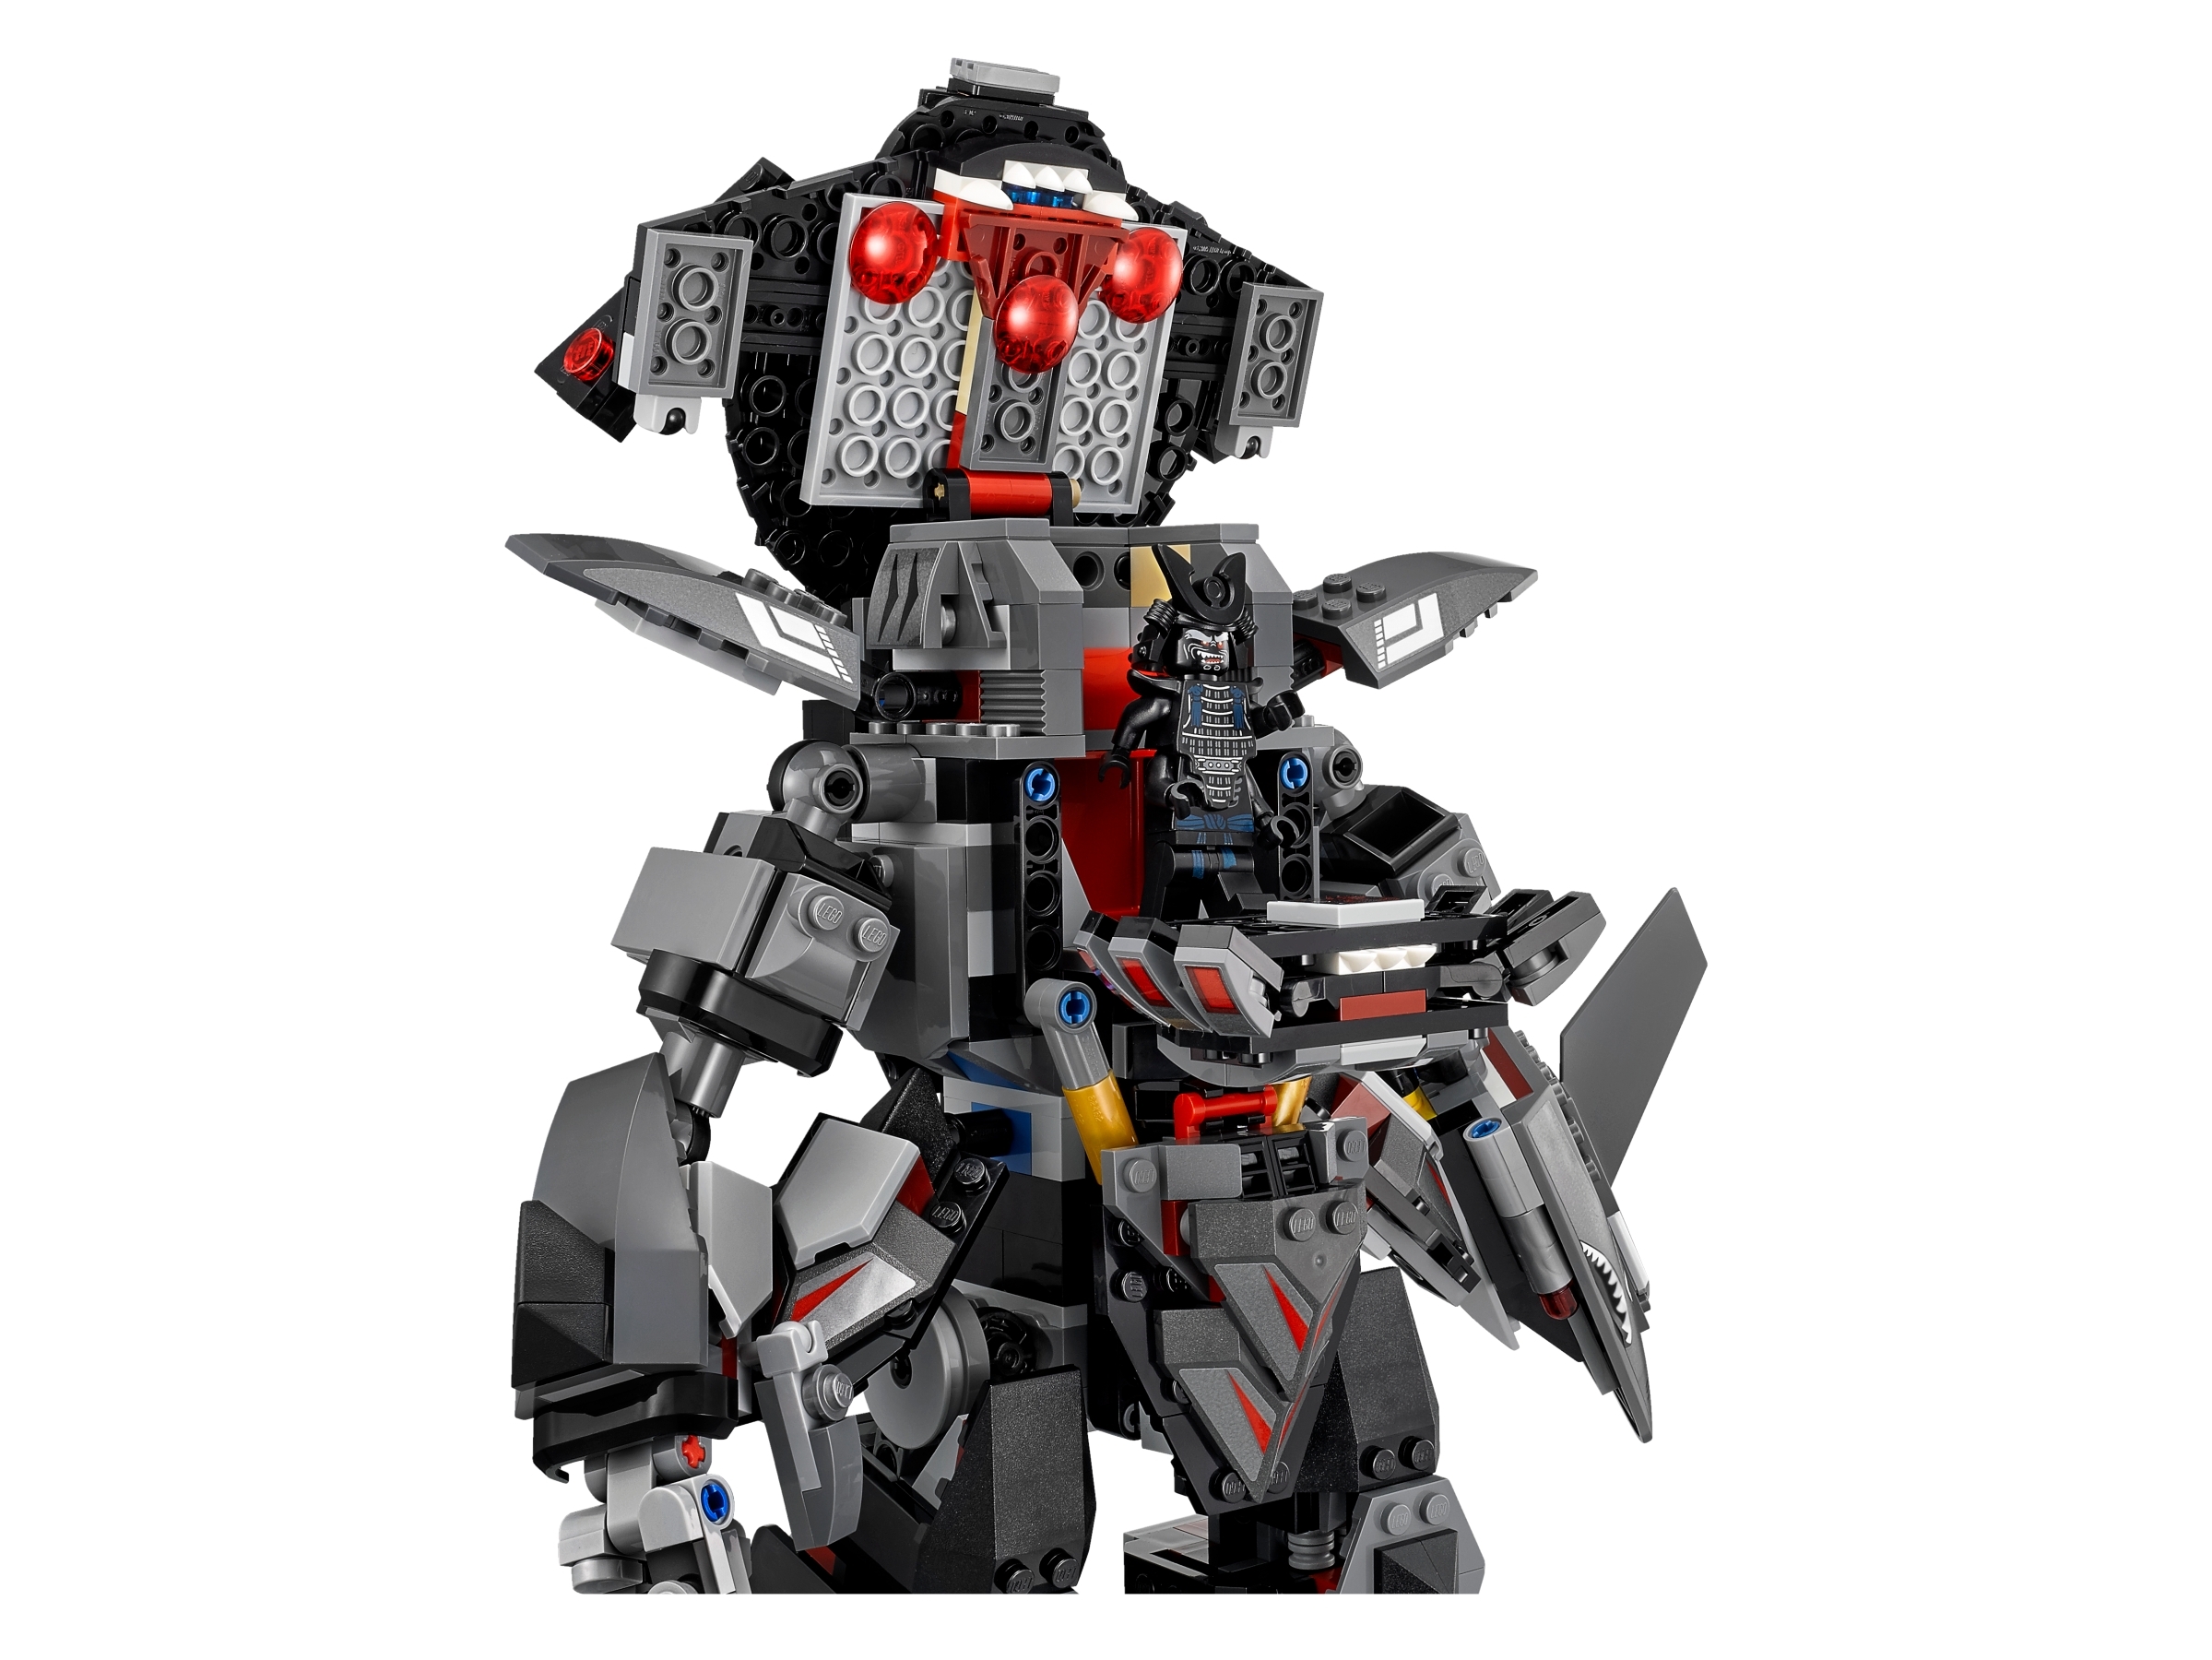 Lloyd Garmadon Mecha Lego Ninjago Robot, robot, electronics, lego